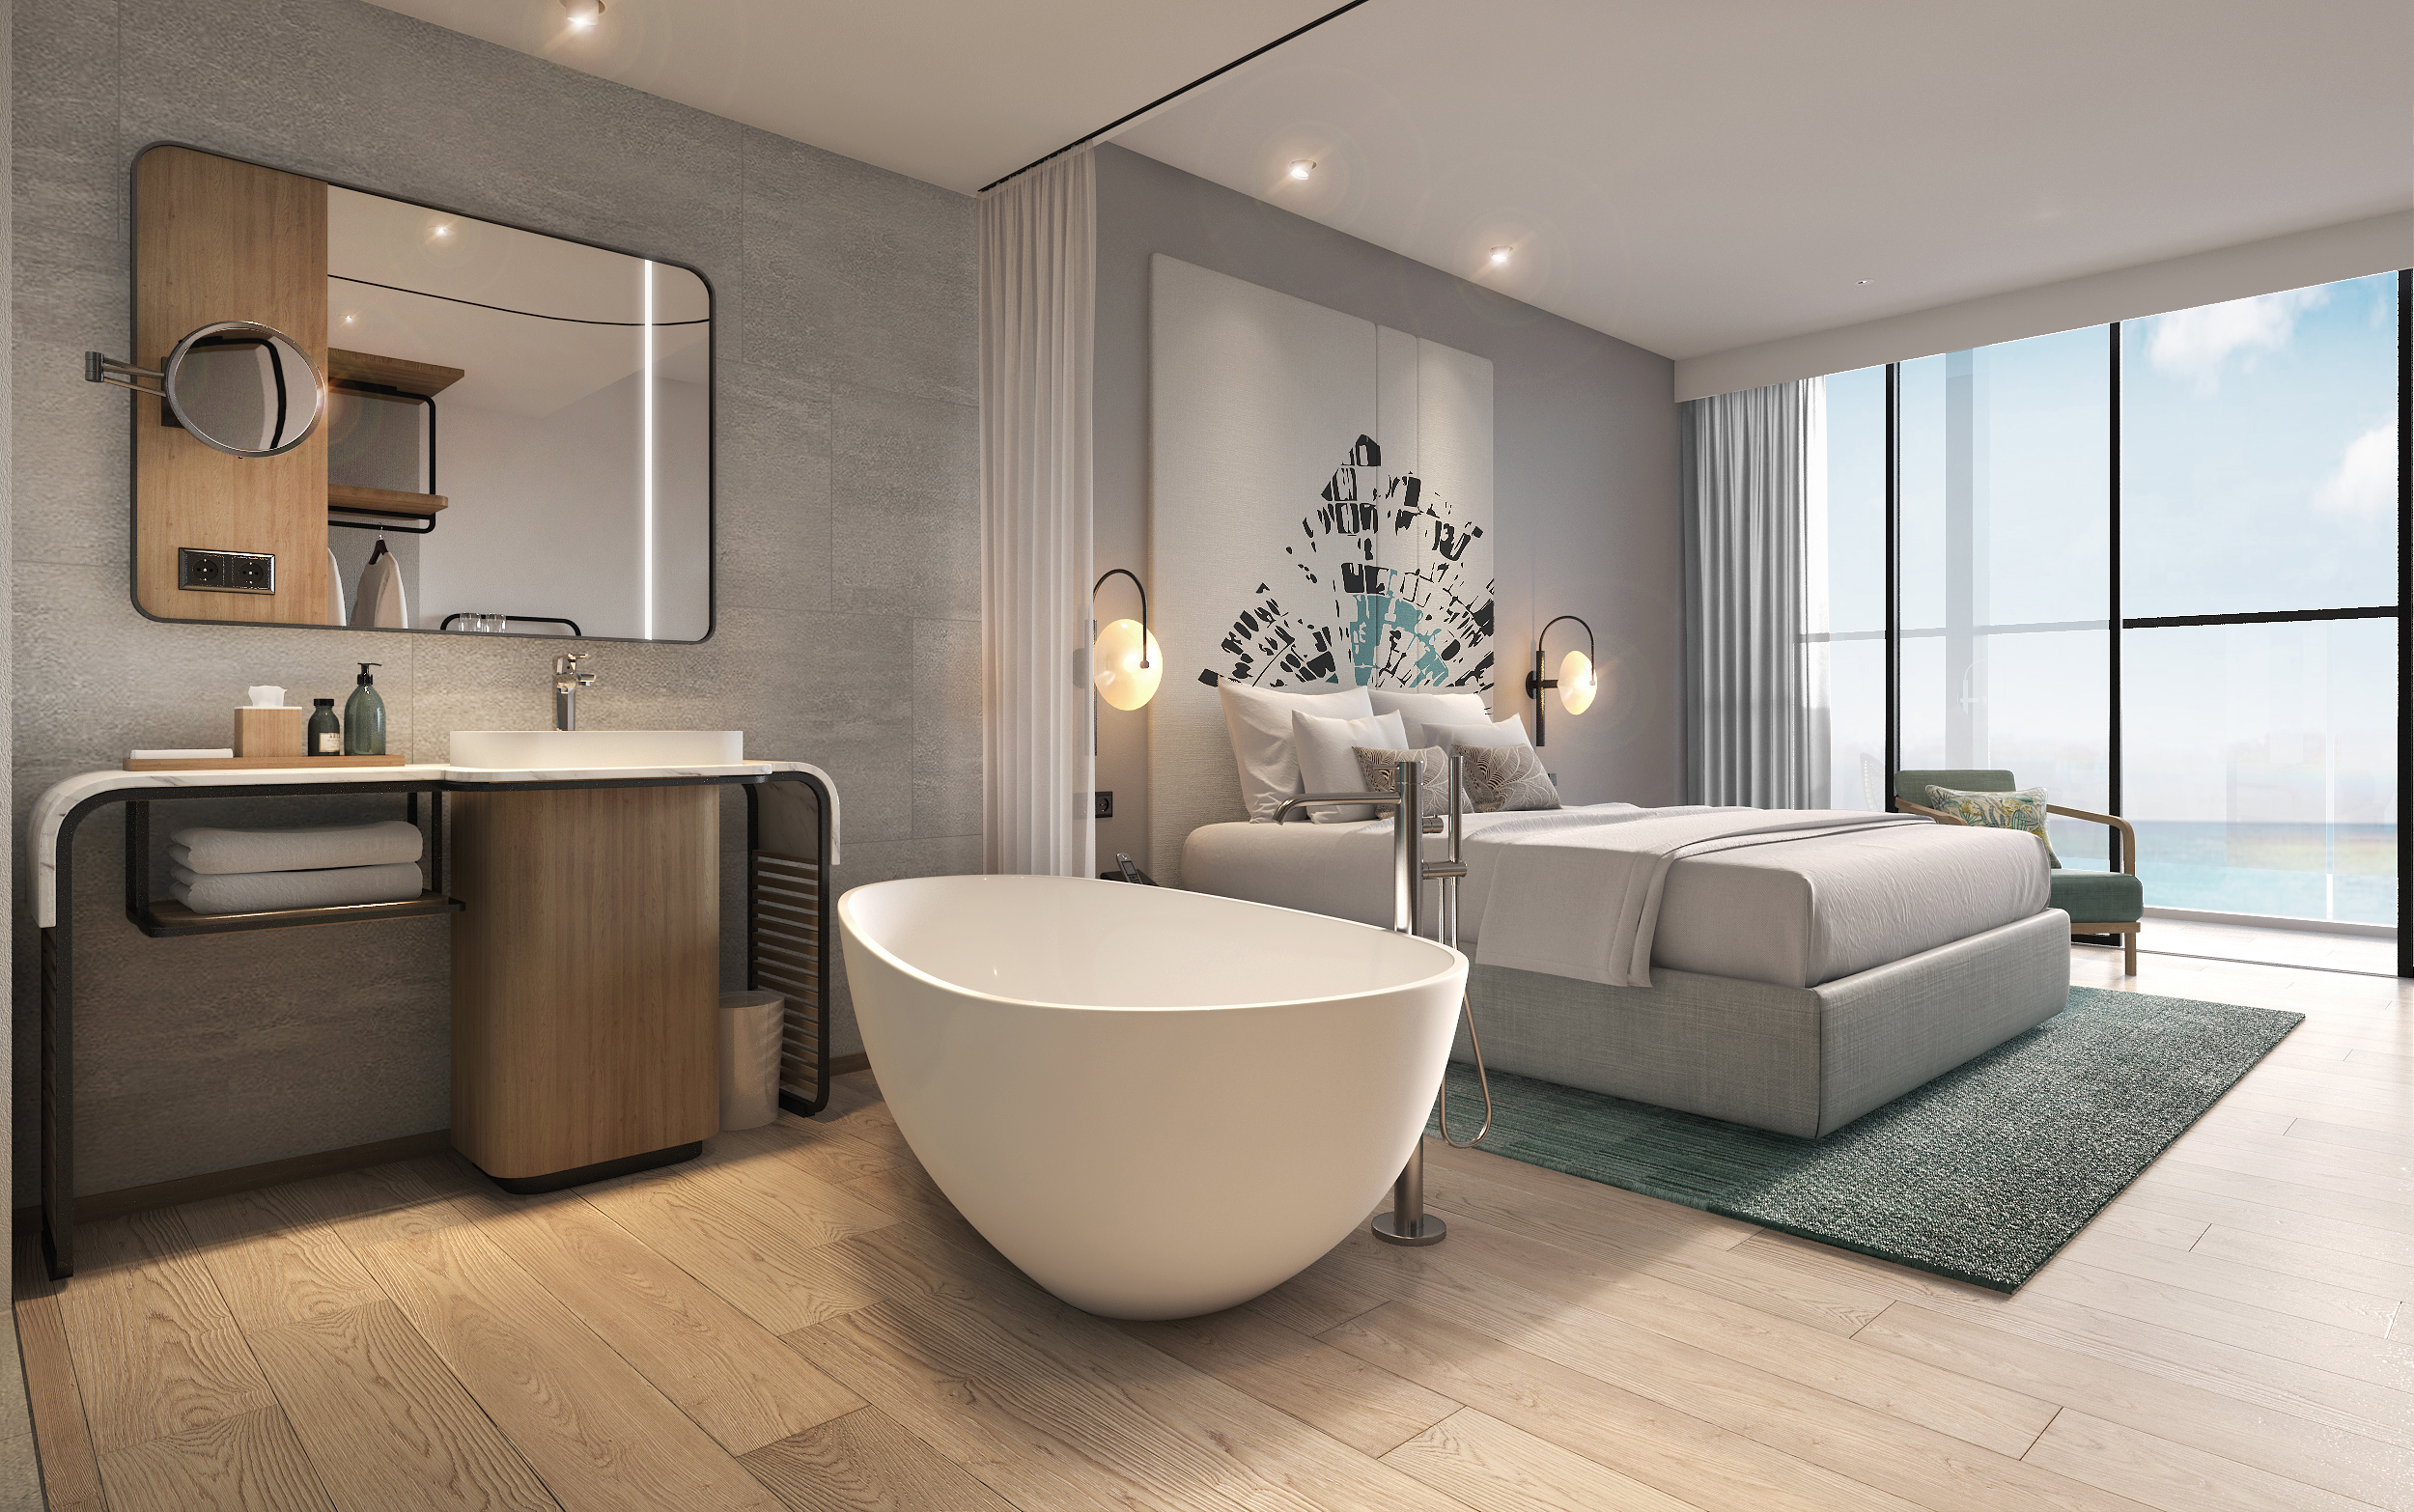 Phòng Suite Standard Double: oại phòng sang trọng bậc nhất được bố trí trước biển với diện tích 62m2 gồm phòng khách đầy đủ tiện nghi và rộng rãi, còn phòng ngủ chính là không gian thoải mái với giường 2mx2m và không gian sinh hoạt riêng biệt - Ảnh: ANYA Premier Hotel